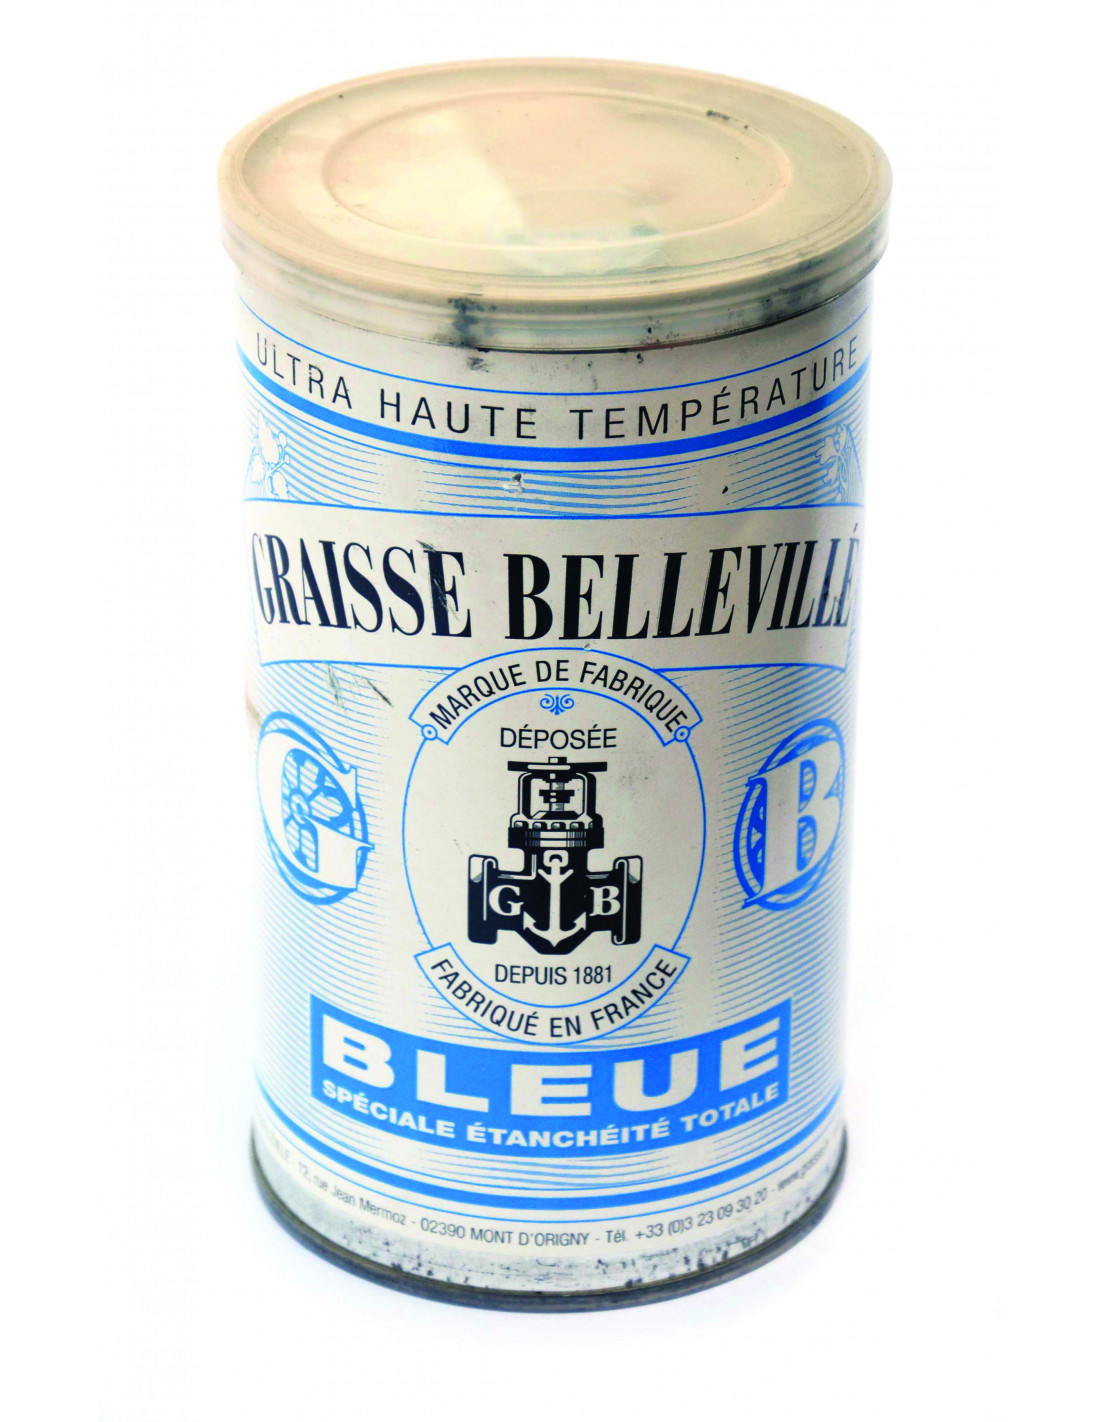 Graisse Blanche Contact Alimentaire Cartouche400g - Graisse-Belleville